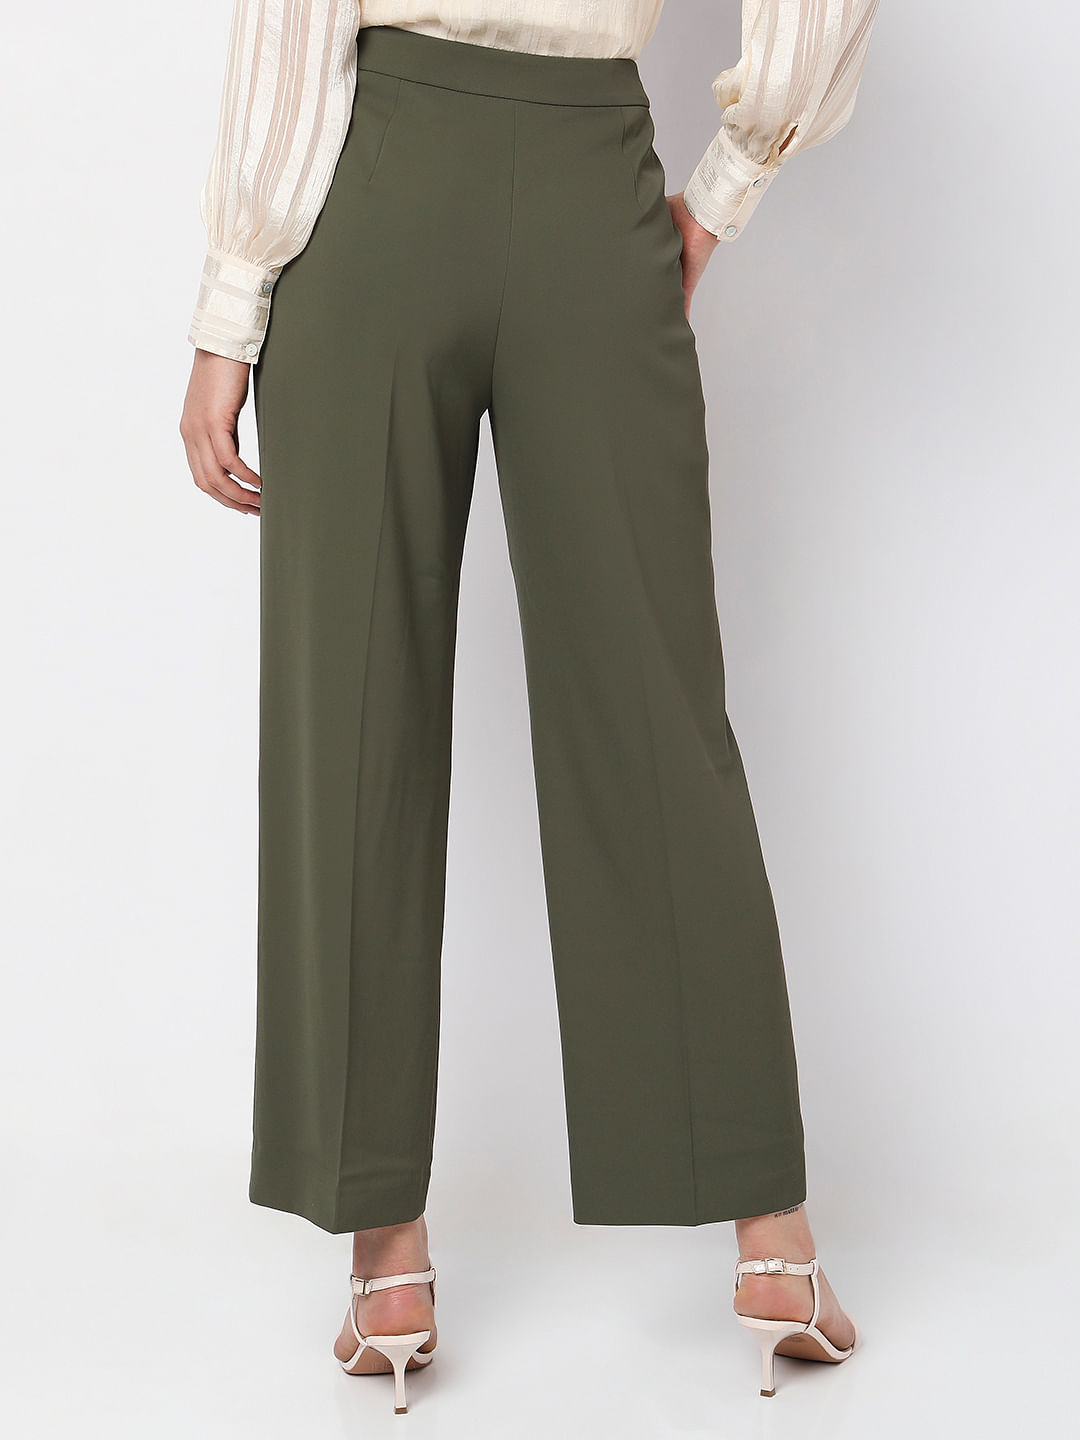 Buy Olive Green Trousers  Pants for Women by LABEL RITU KUMAR Online   Ajiocom